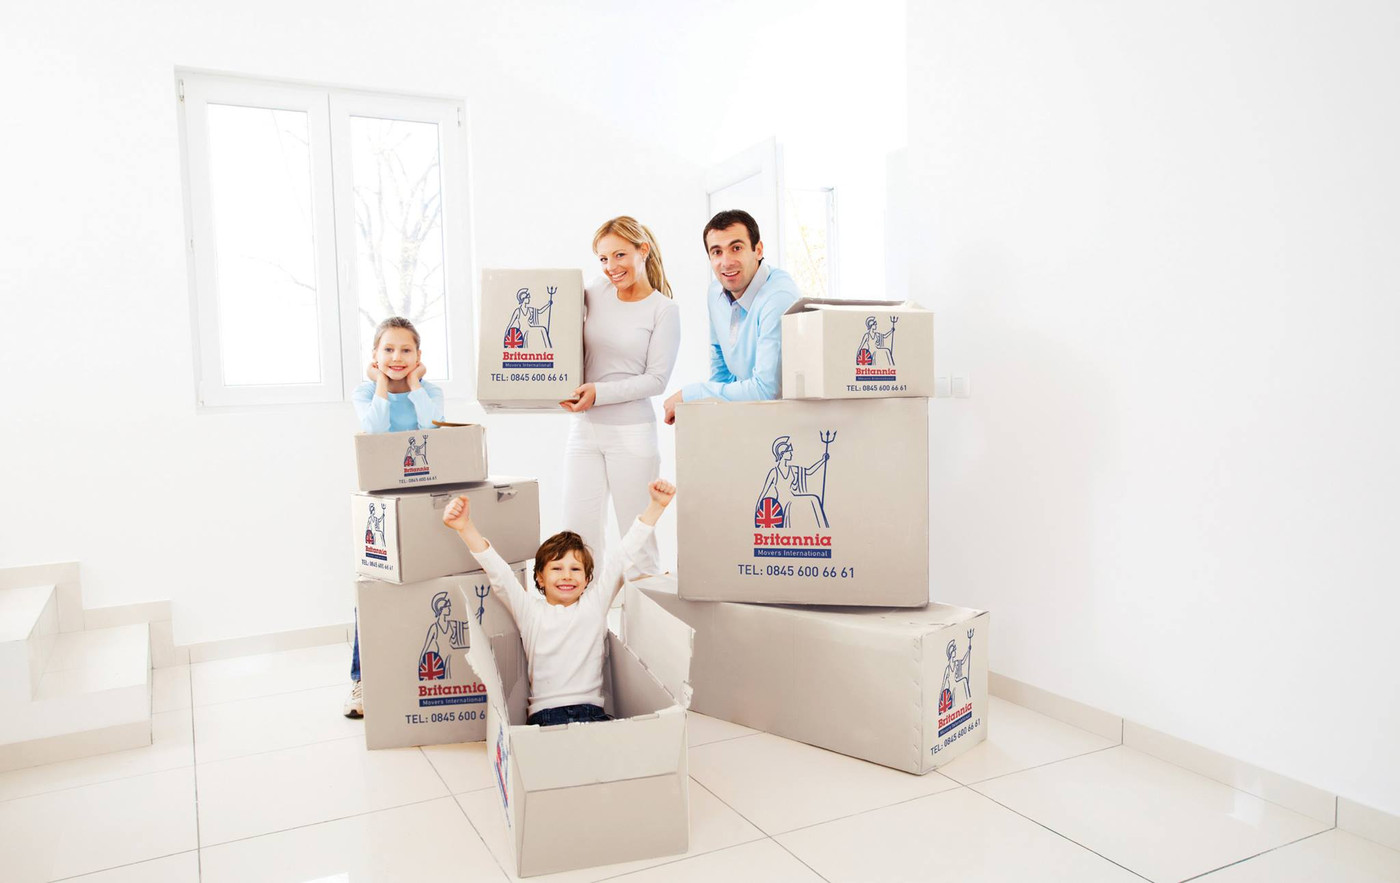 Britannia Bradshaw International Removals & Storage Moving Home with Children